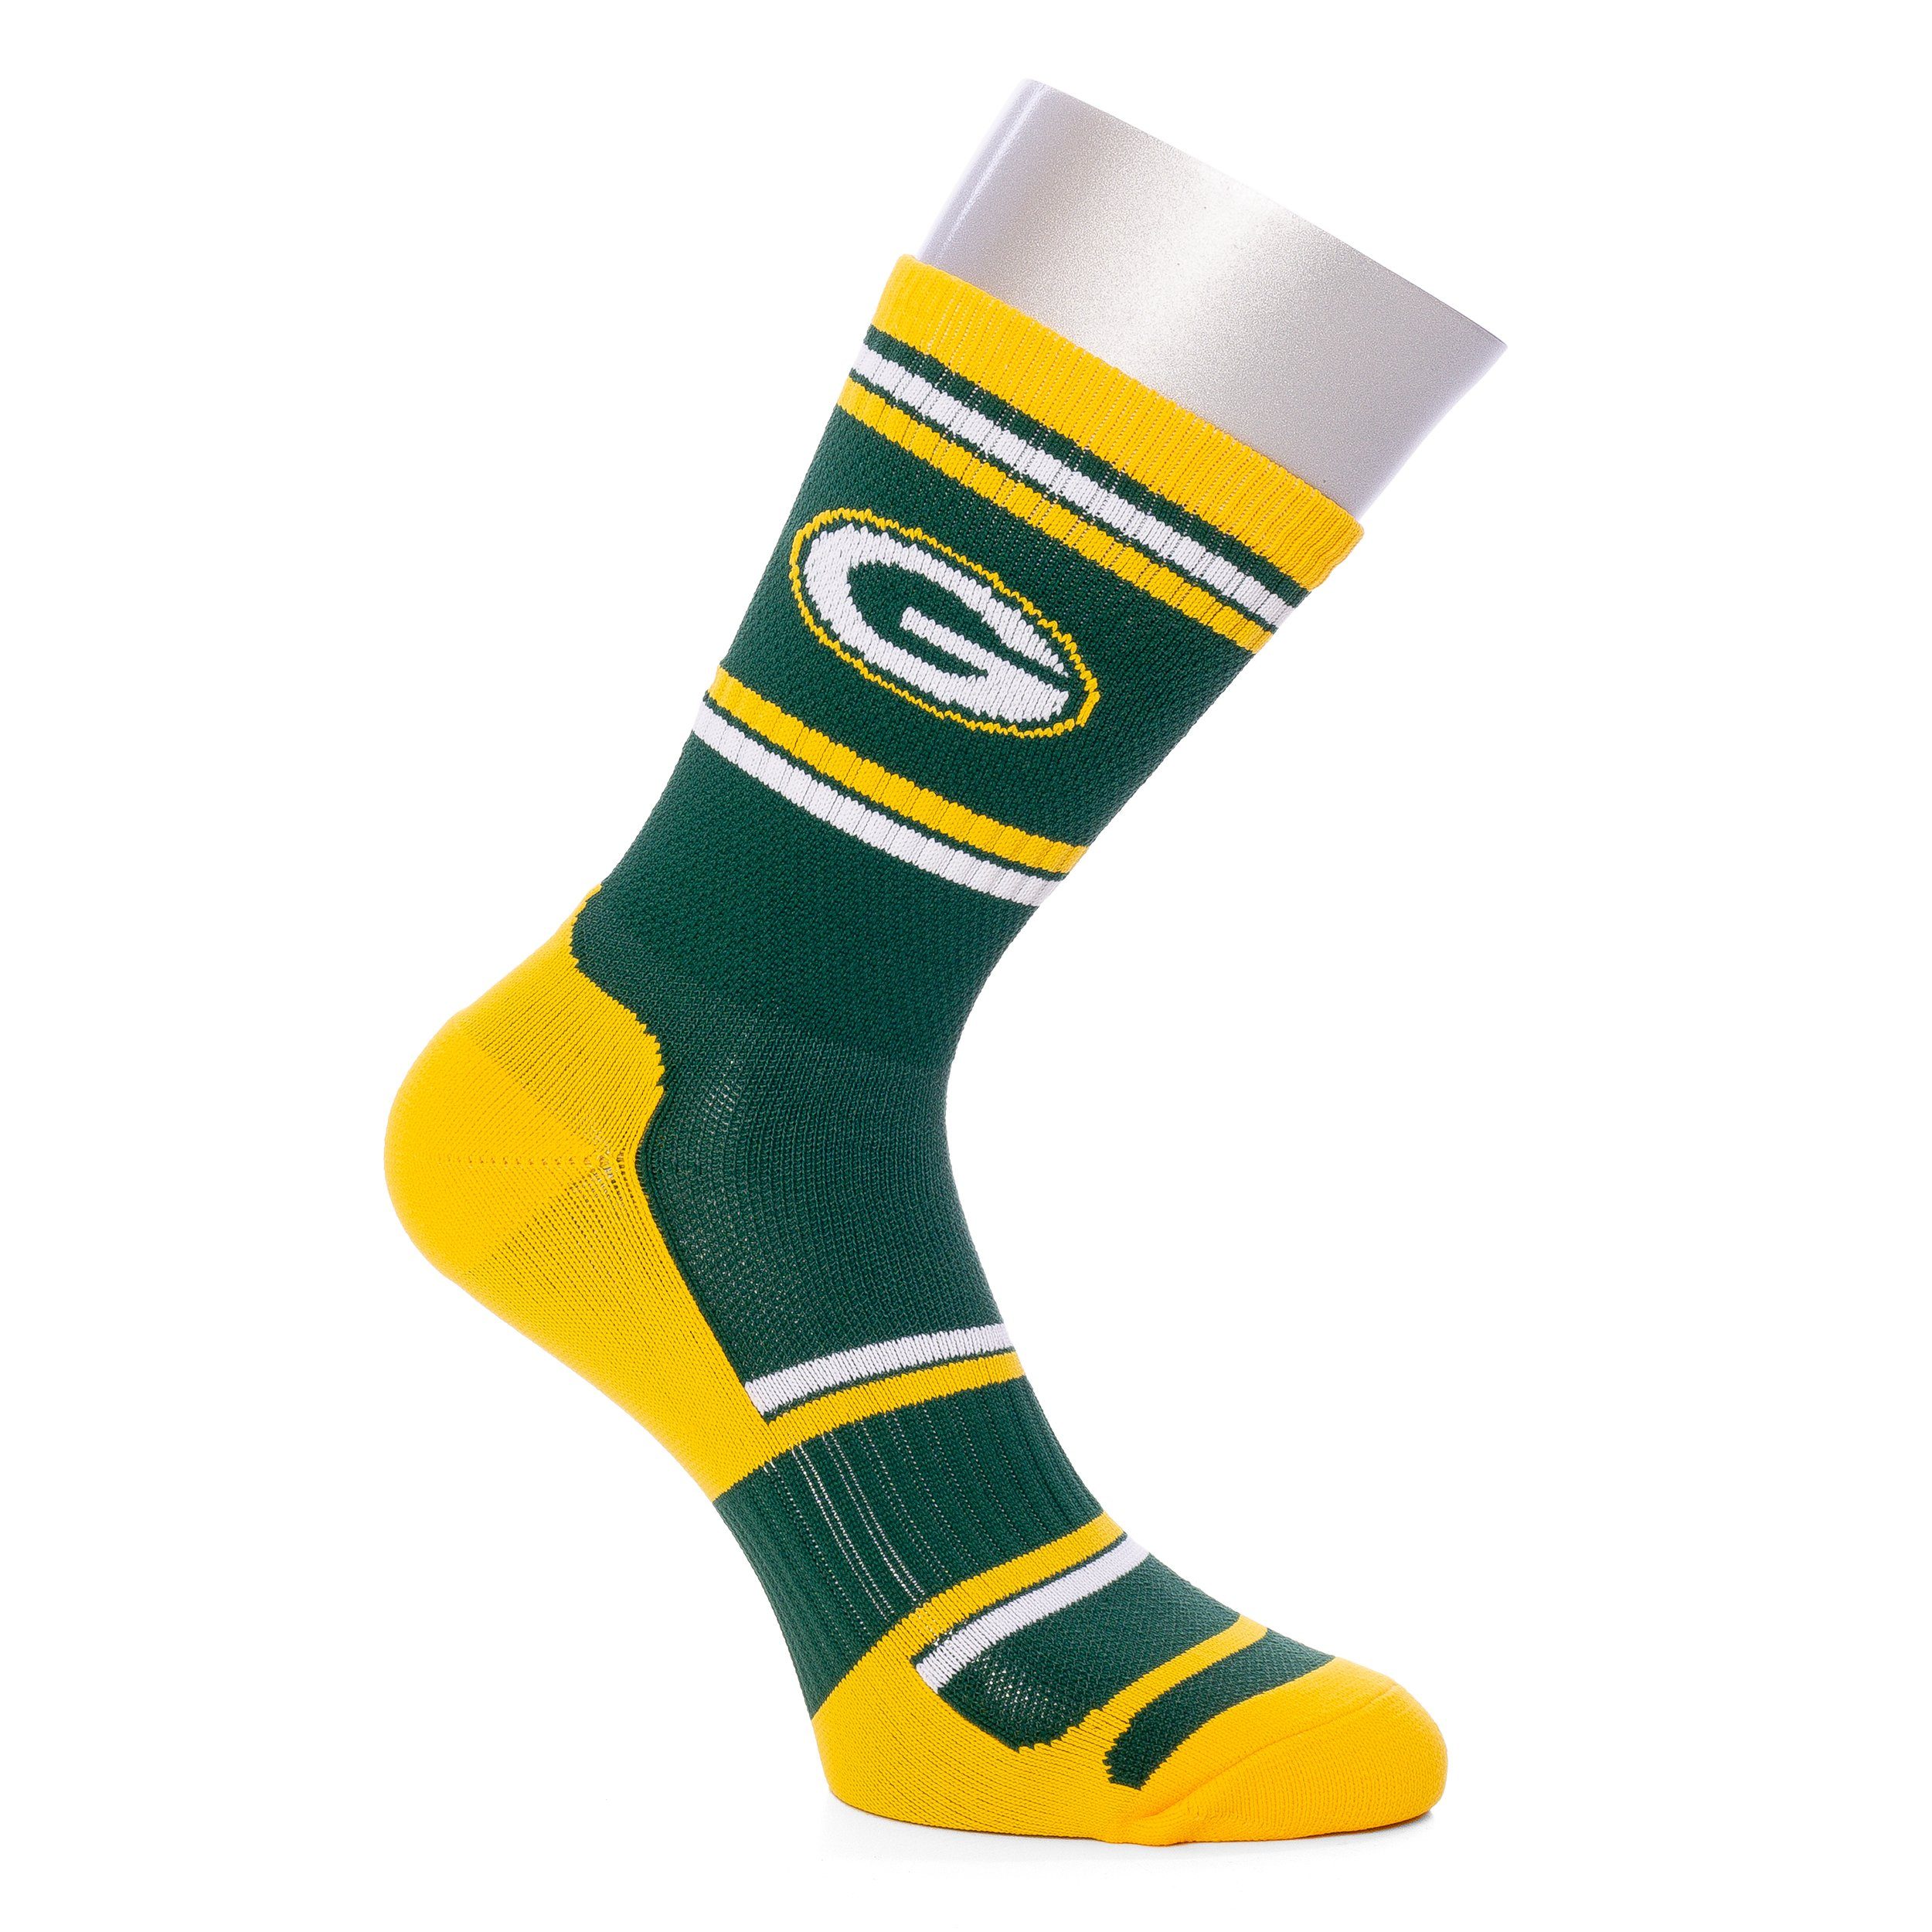 Fanatics Freizeitsocken Socken NFL Green Bay Packers Performer I, G M, F green/gelb (1-Paar)